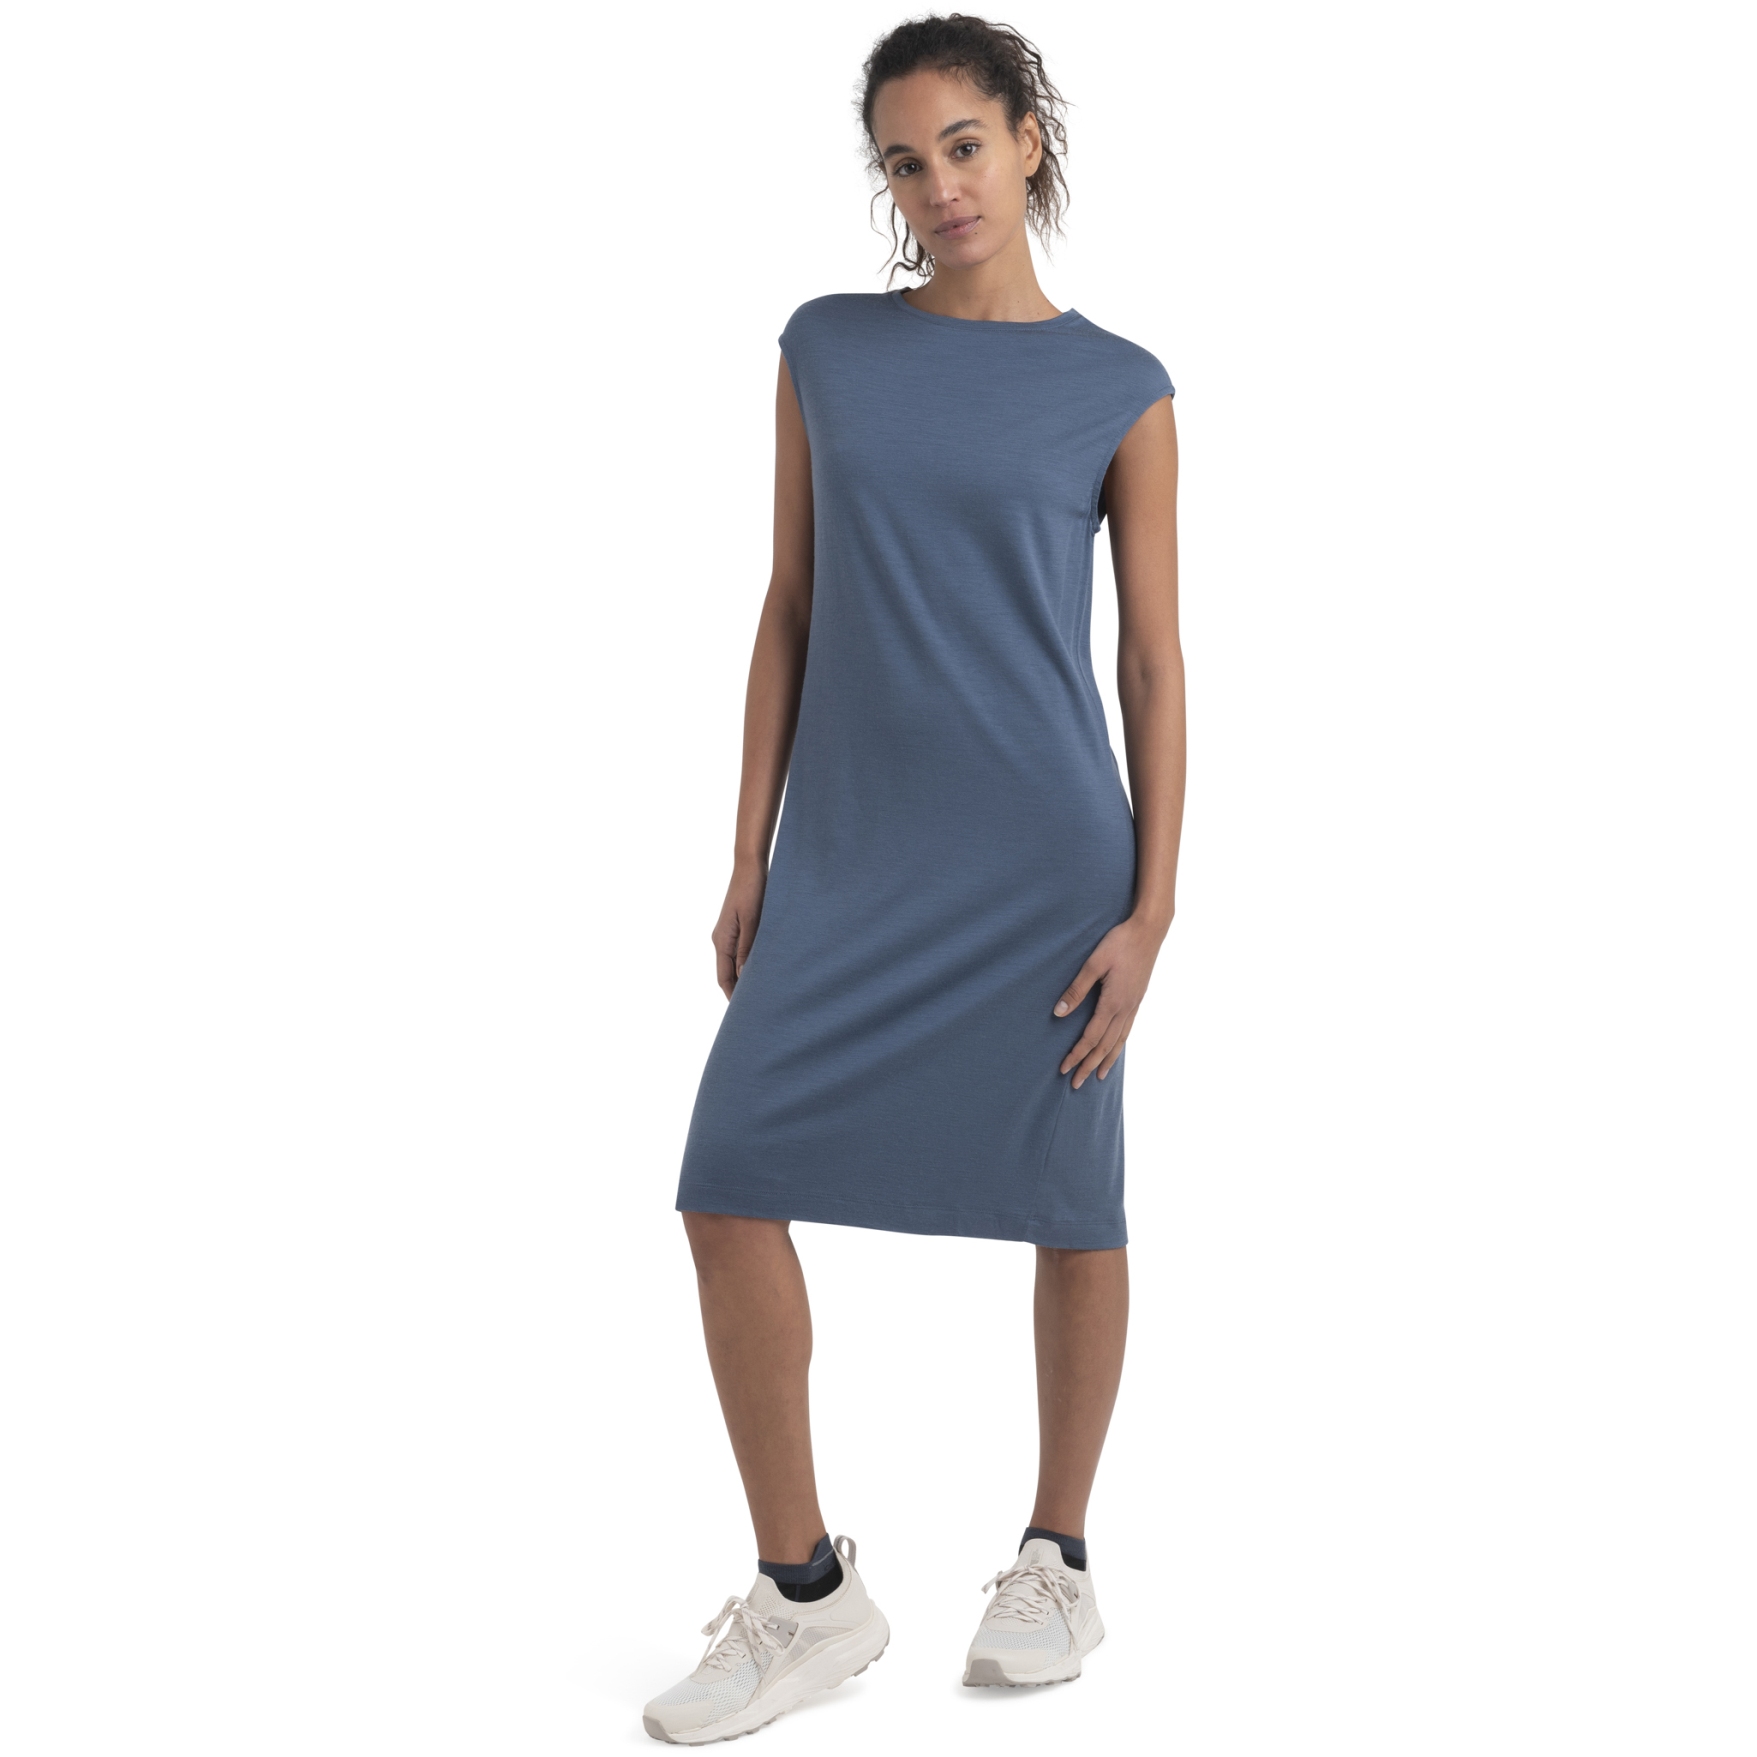 Produktbild von Icebreaker Merino Granary Ärmelloses Kleid Damen - Dawn